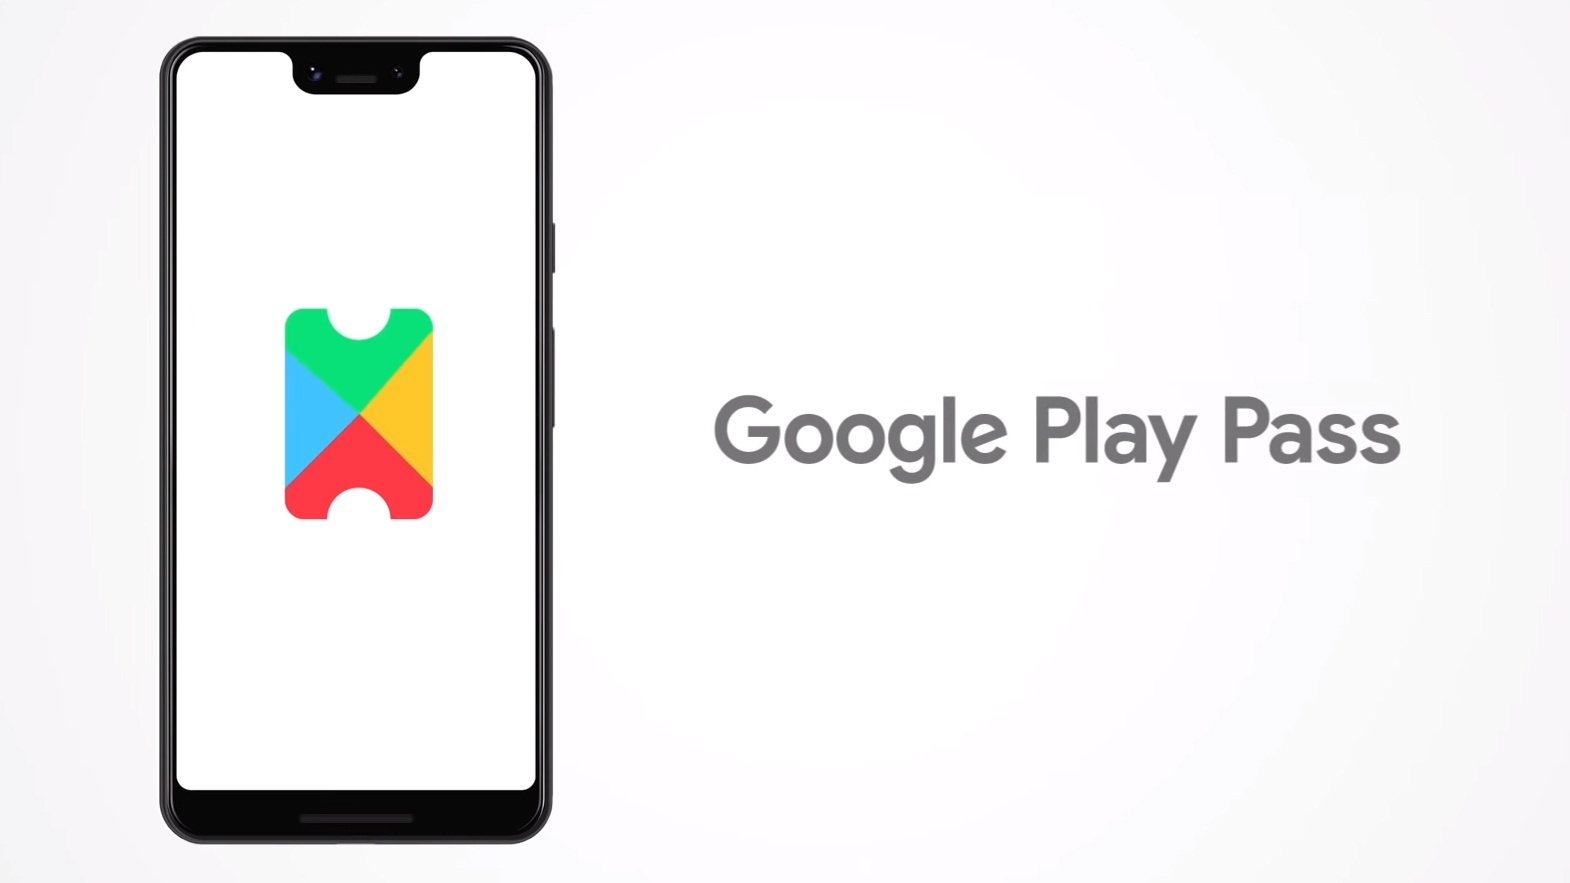 Google Play Pass за $4.99/мес. предлагает доступ к играм и приложениям без рекламы и внутриигровых покупок